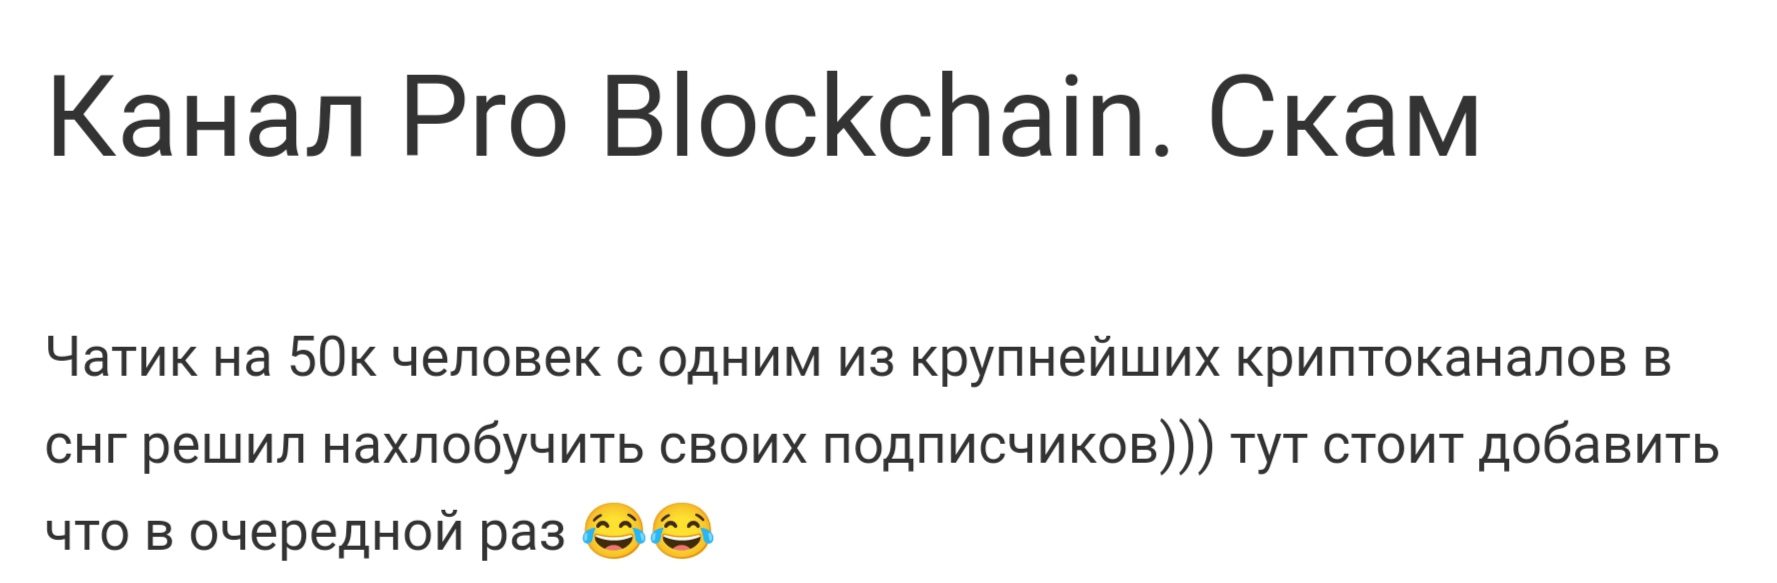 Pro Blockchain Media отзывы